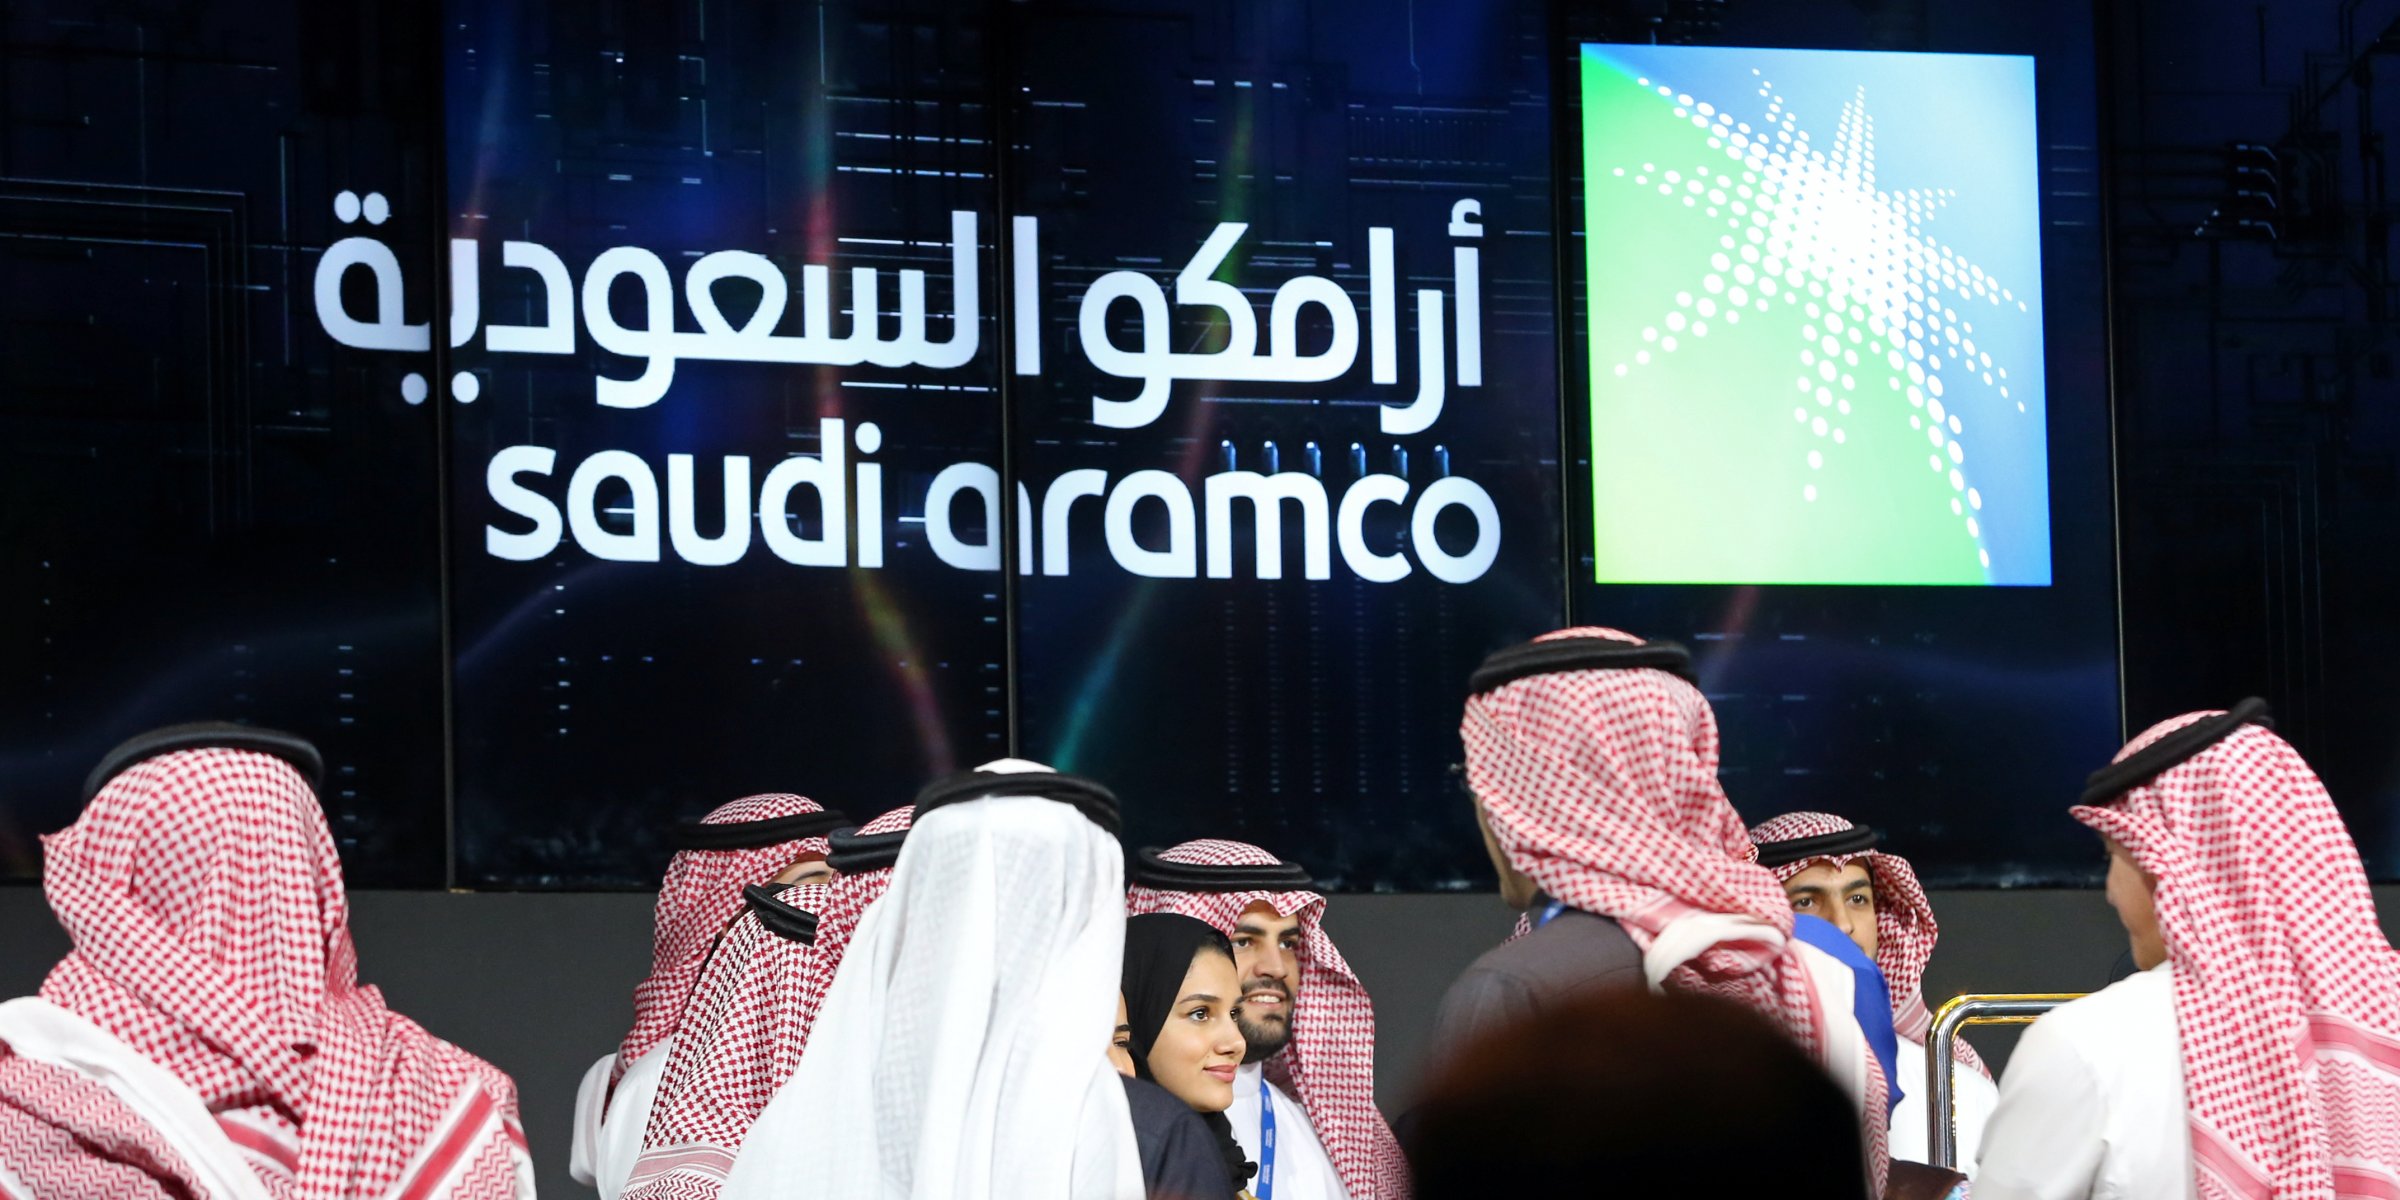 aramco traders shares saudi short